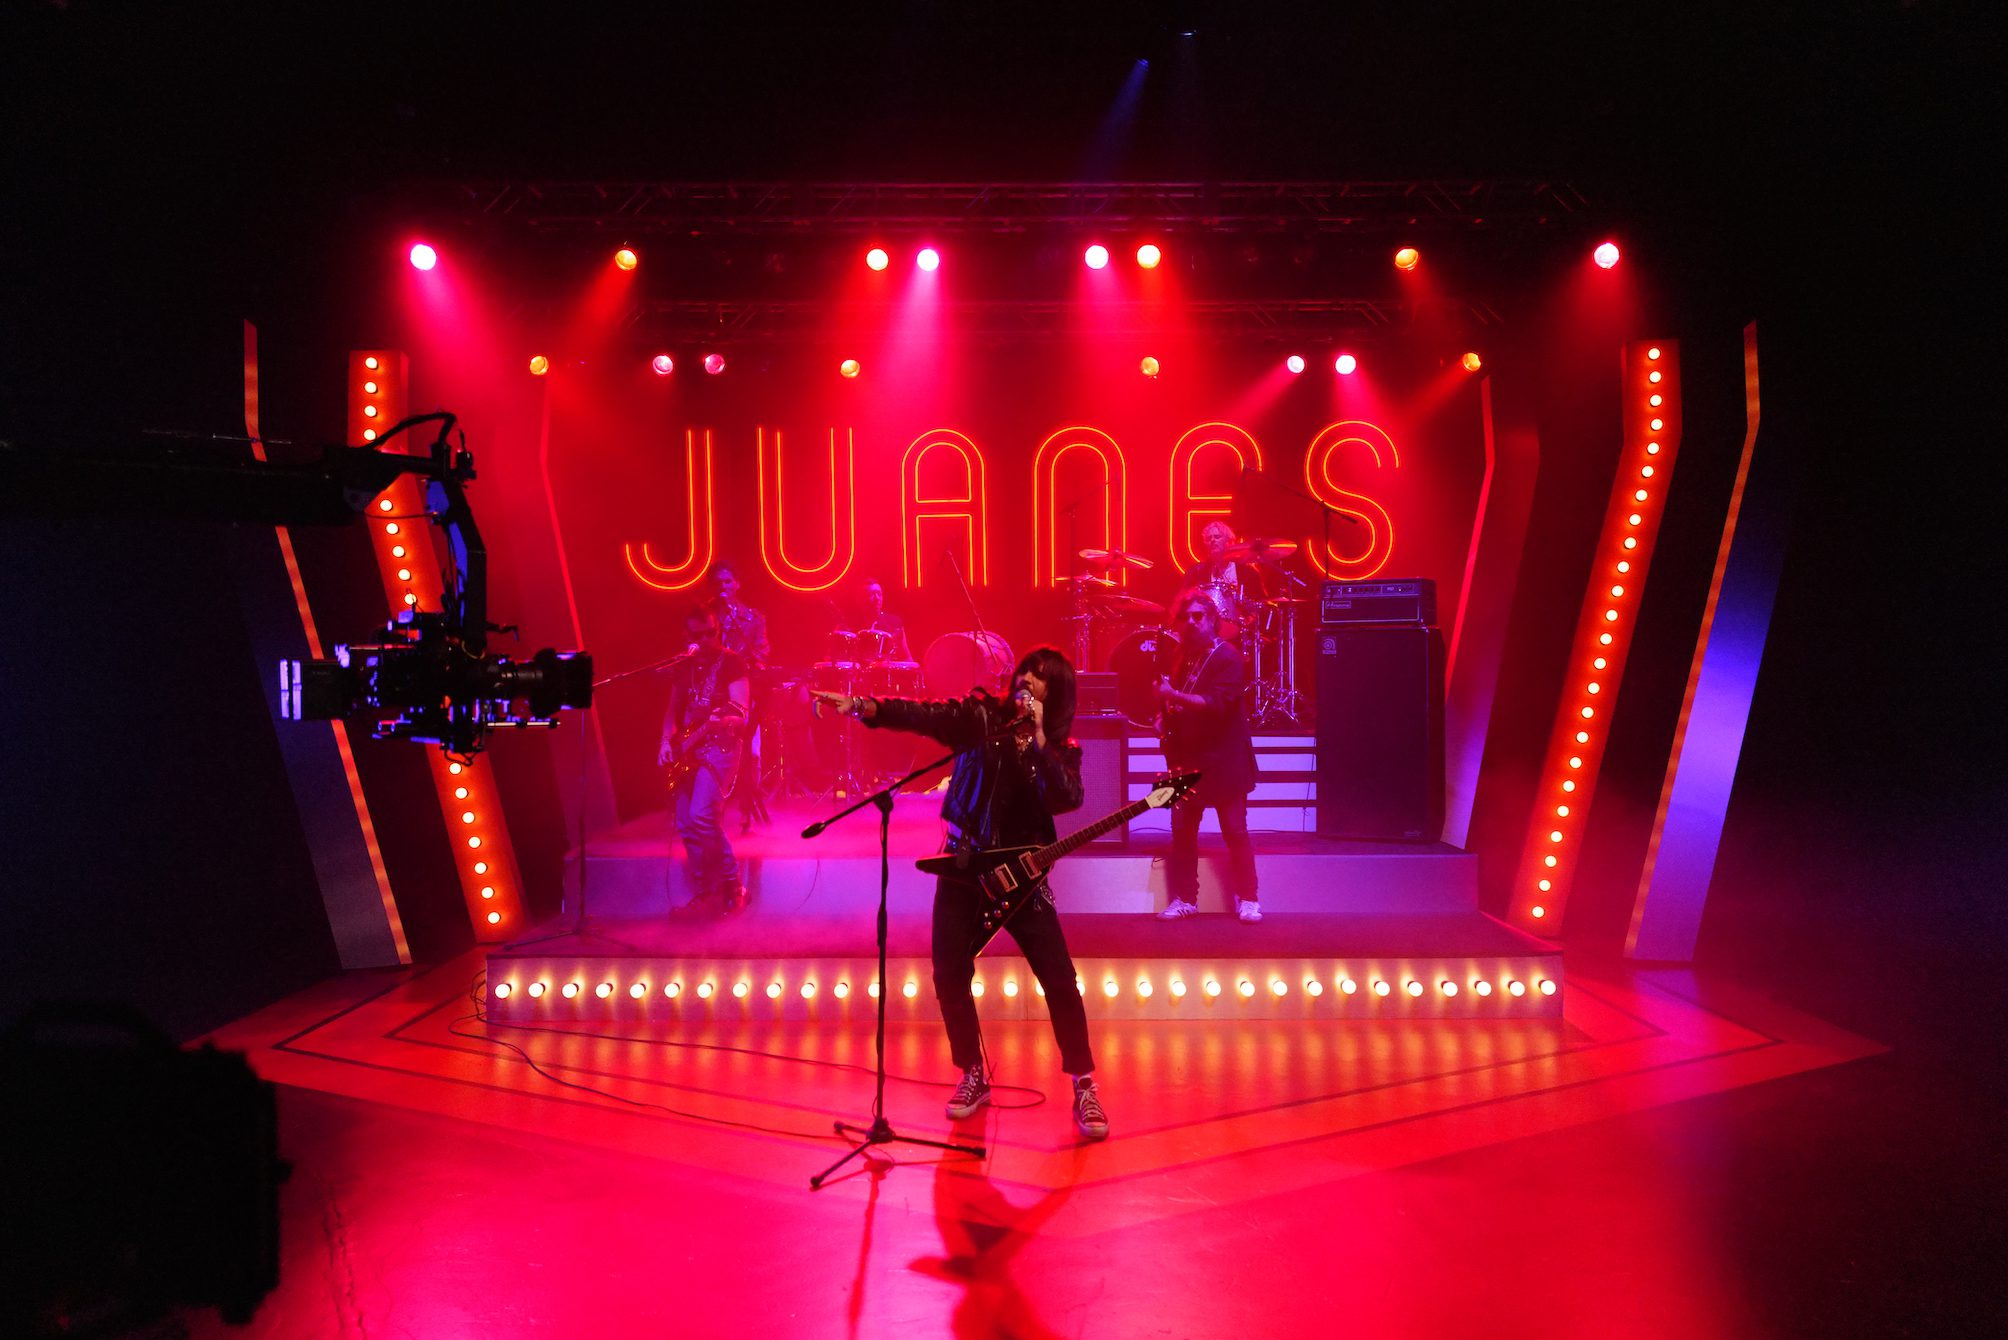 Juanes Video Production